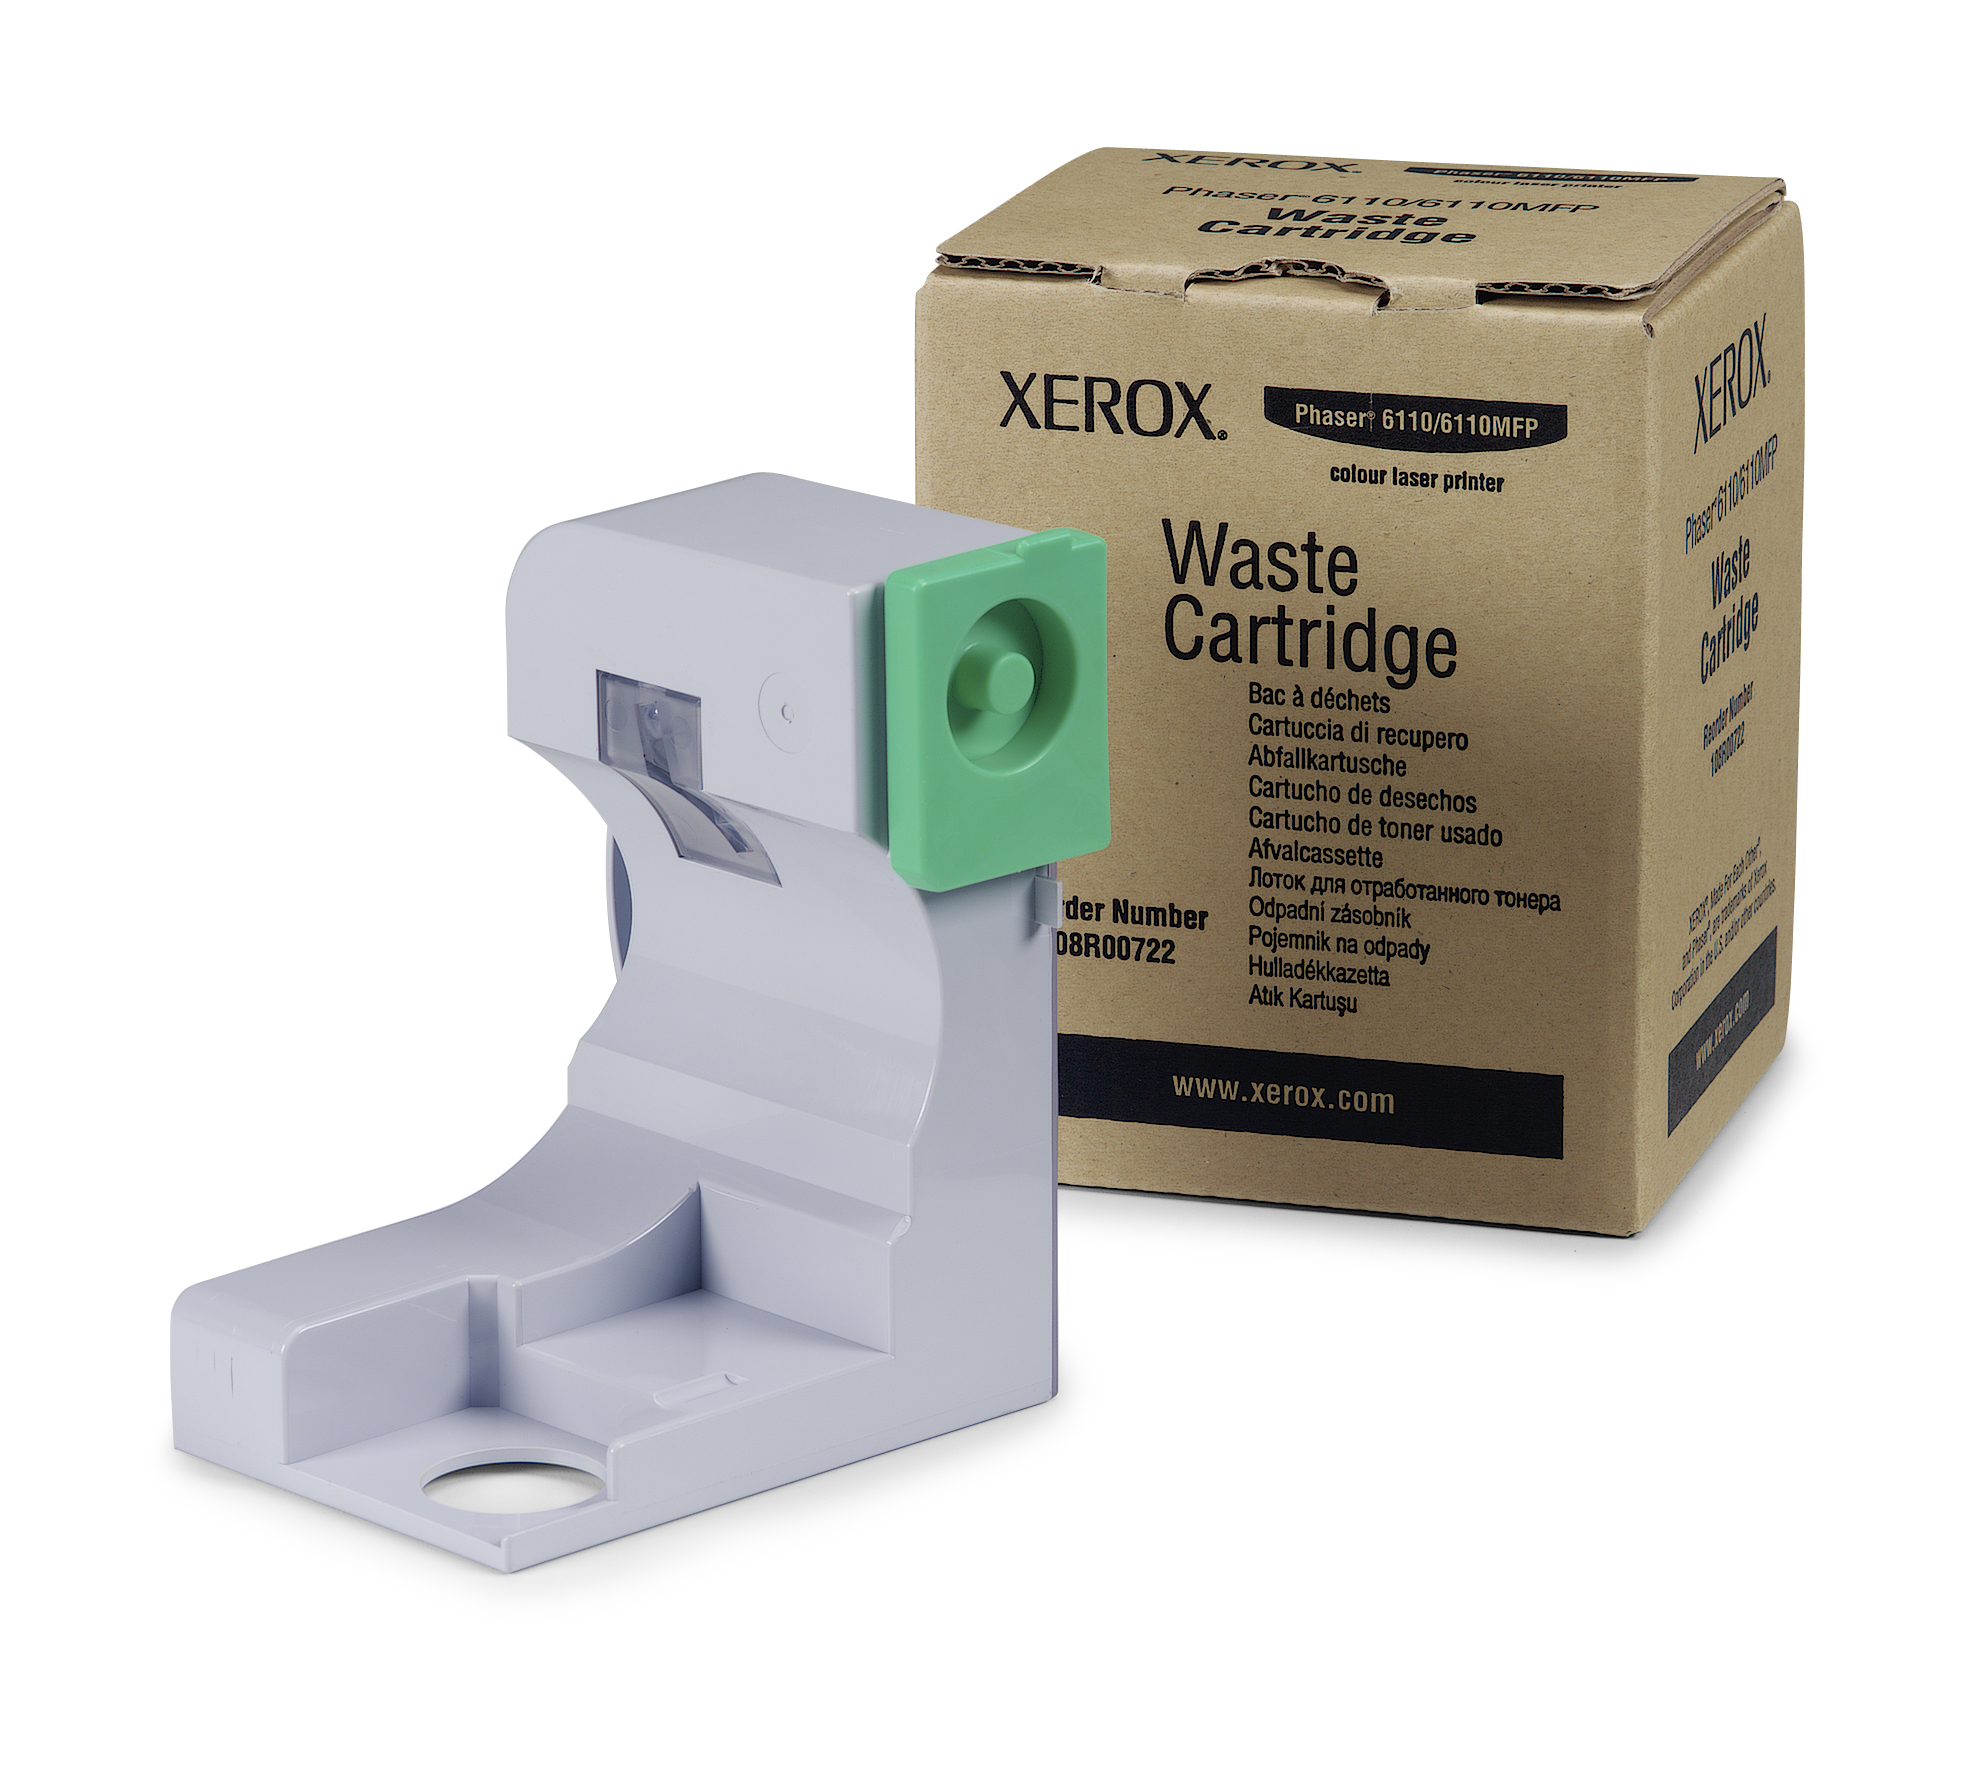 Waste bottle 108R00722 Genuine Xerox Supplies